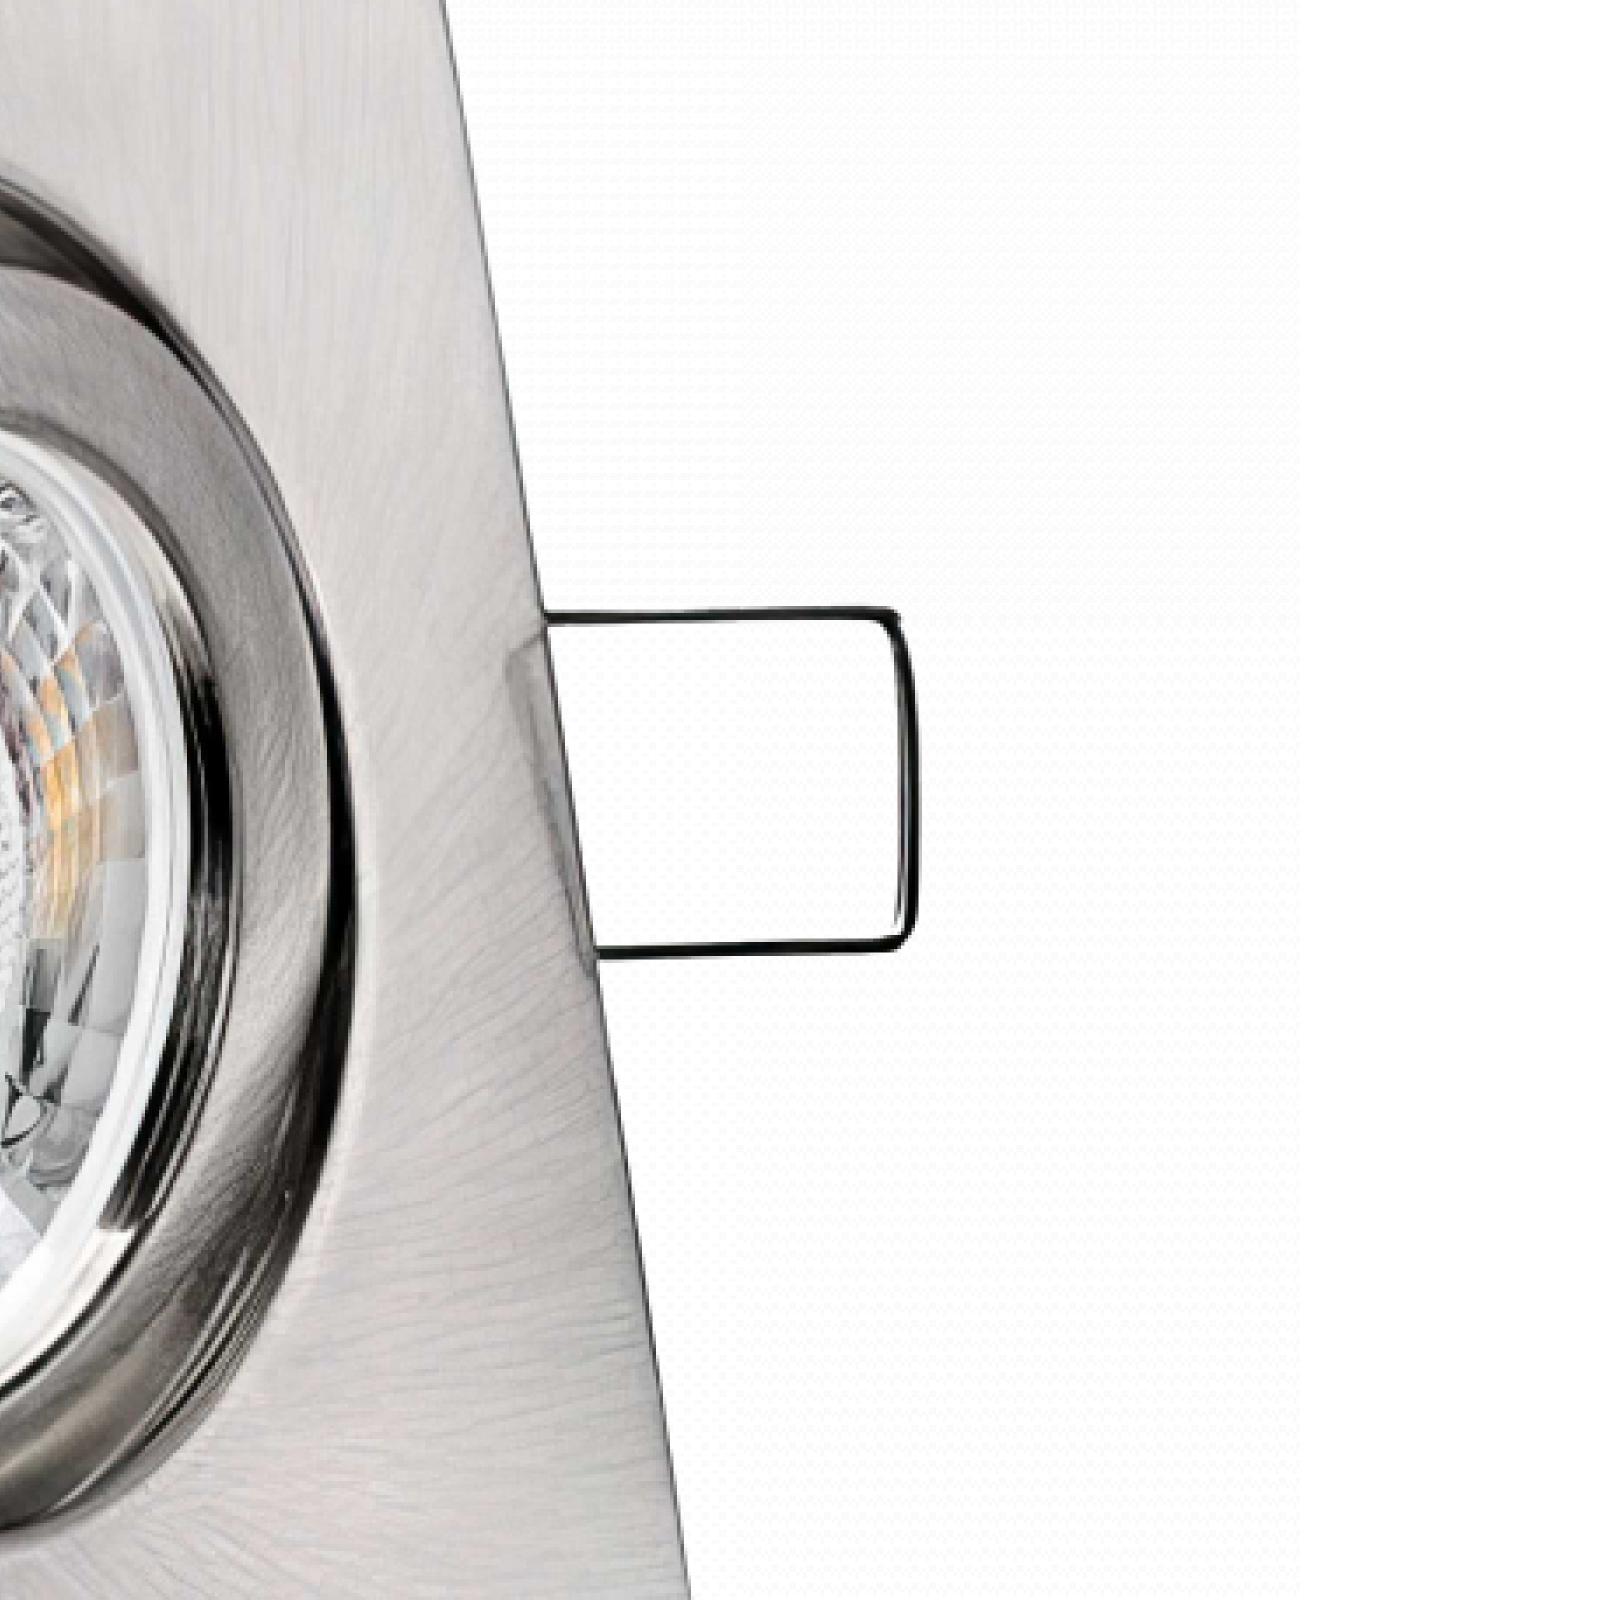 LED Einbaustrahler Edelstahl gebürstet | Quadratischer Einbauspot | 30° schwenkbar | Lochmaß Ø 68mm - 80mm | Einbautiefe 64mm | Anschlussfertig mit GU10 230V Fassung 